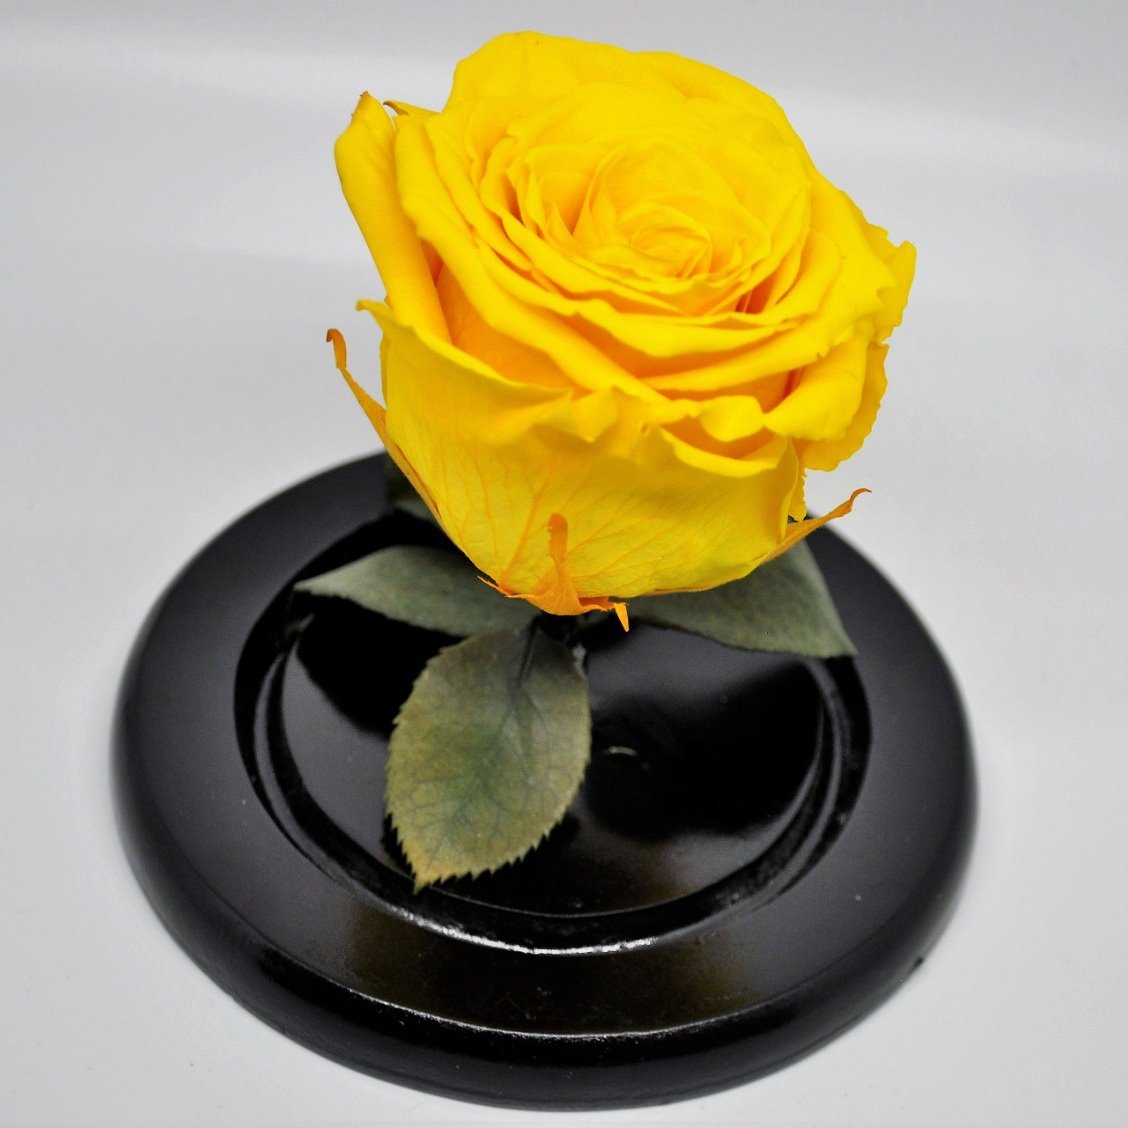 Preserved Medium Rose in a Dome